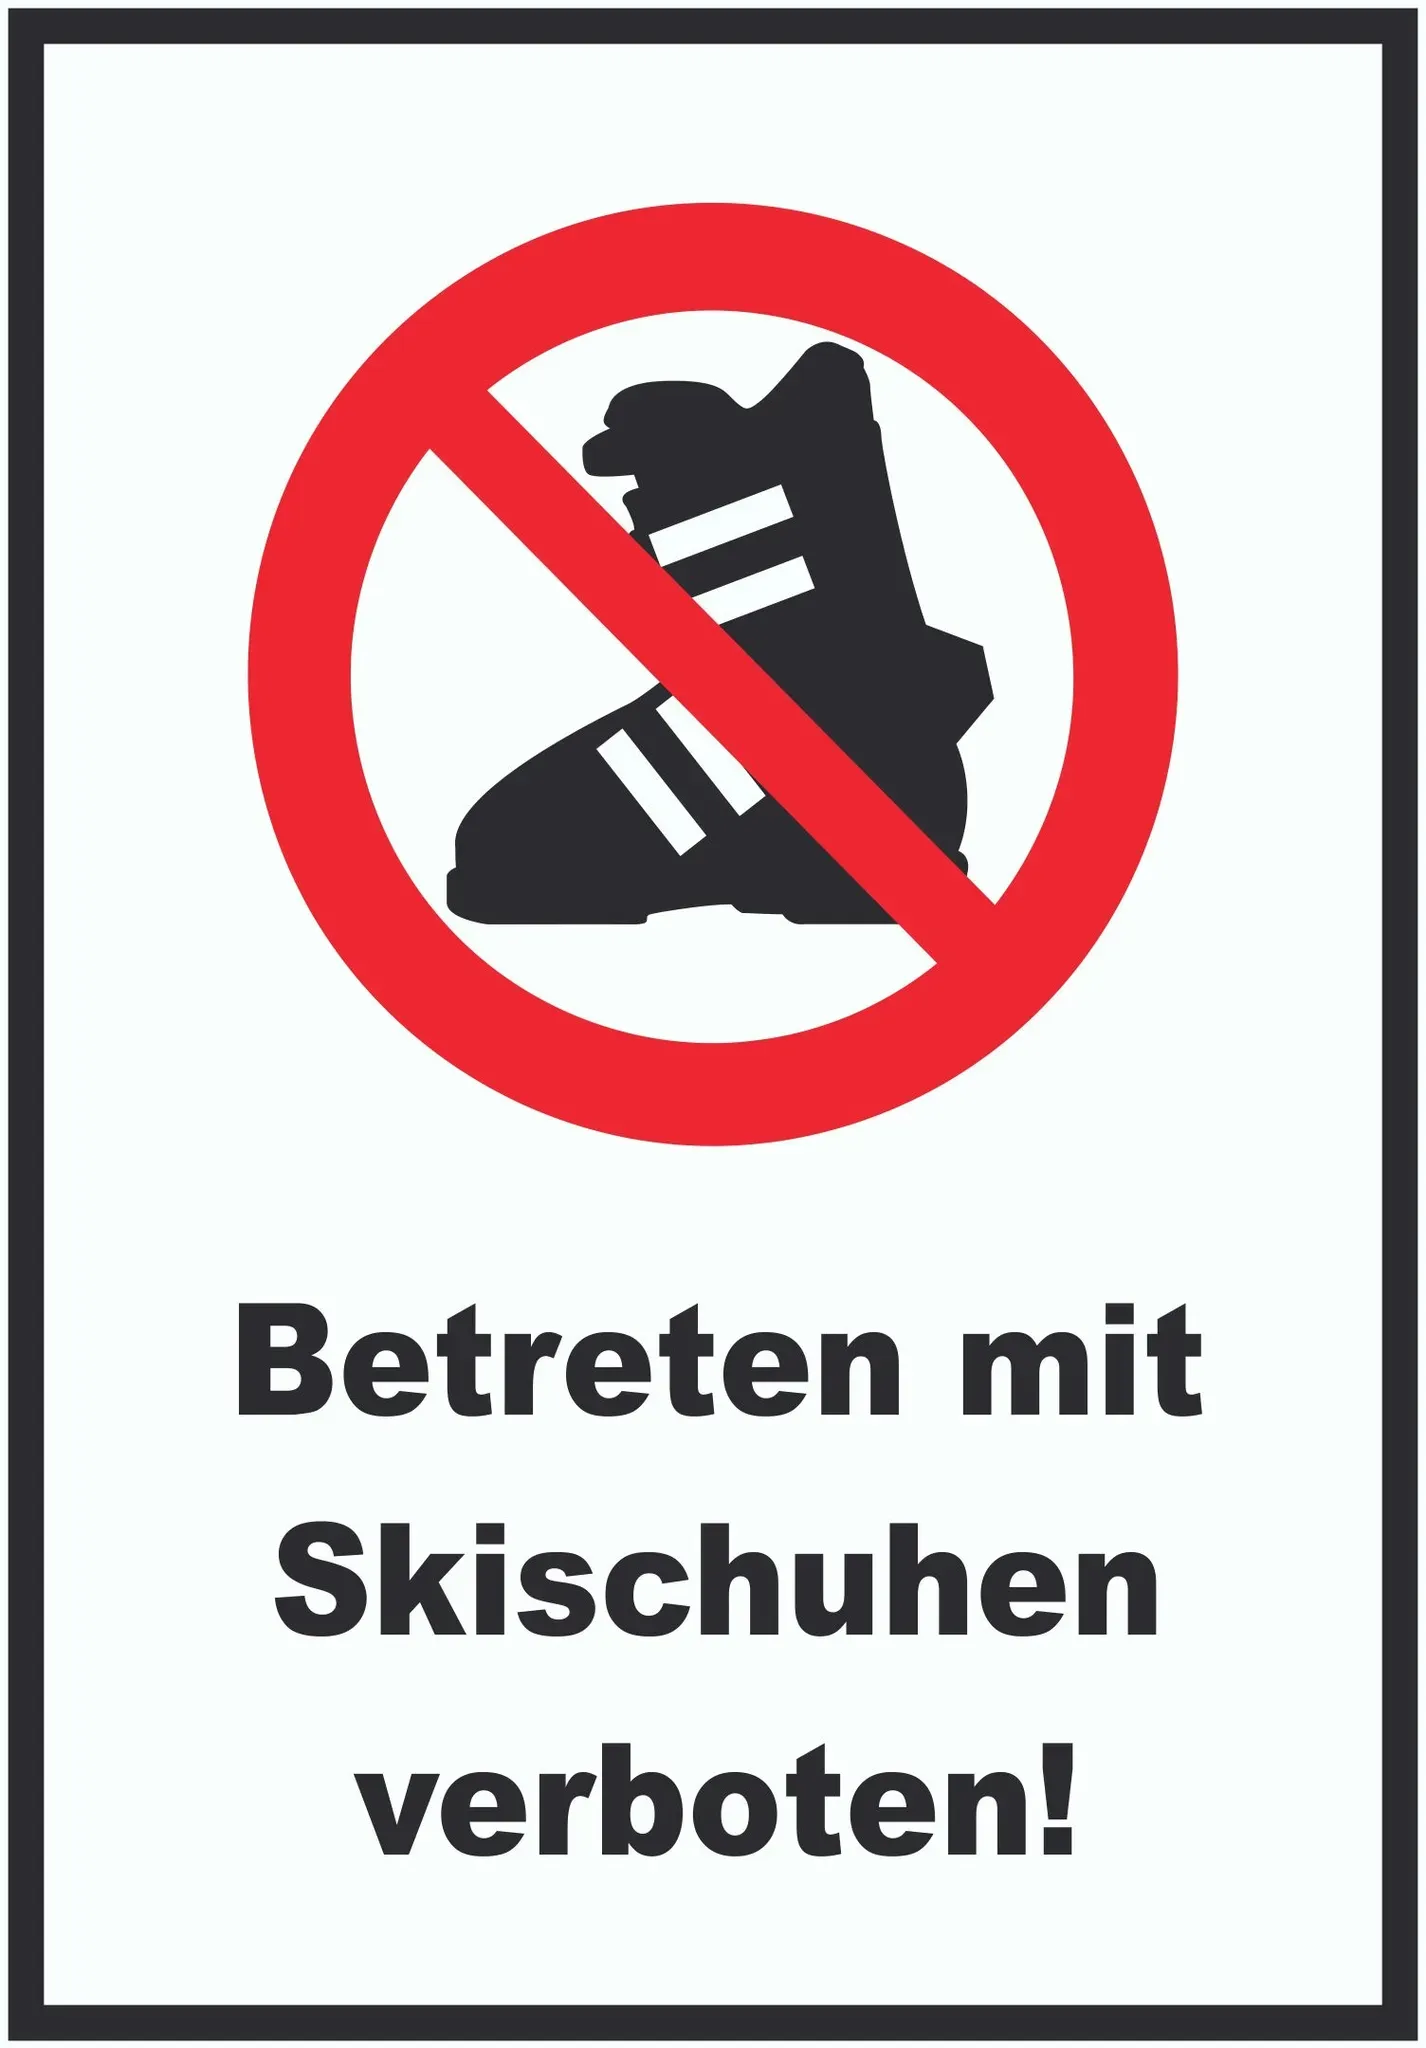 Betreten mit Skischuhen verboten! Schild A3 (297x420mm)